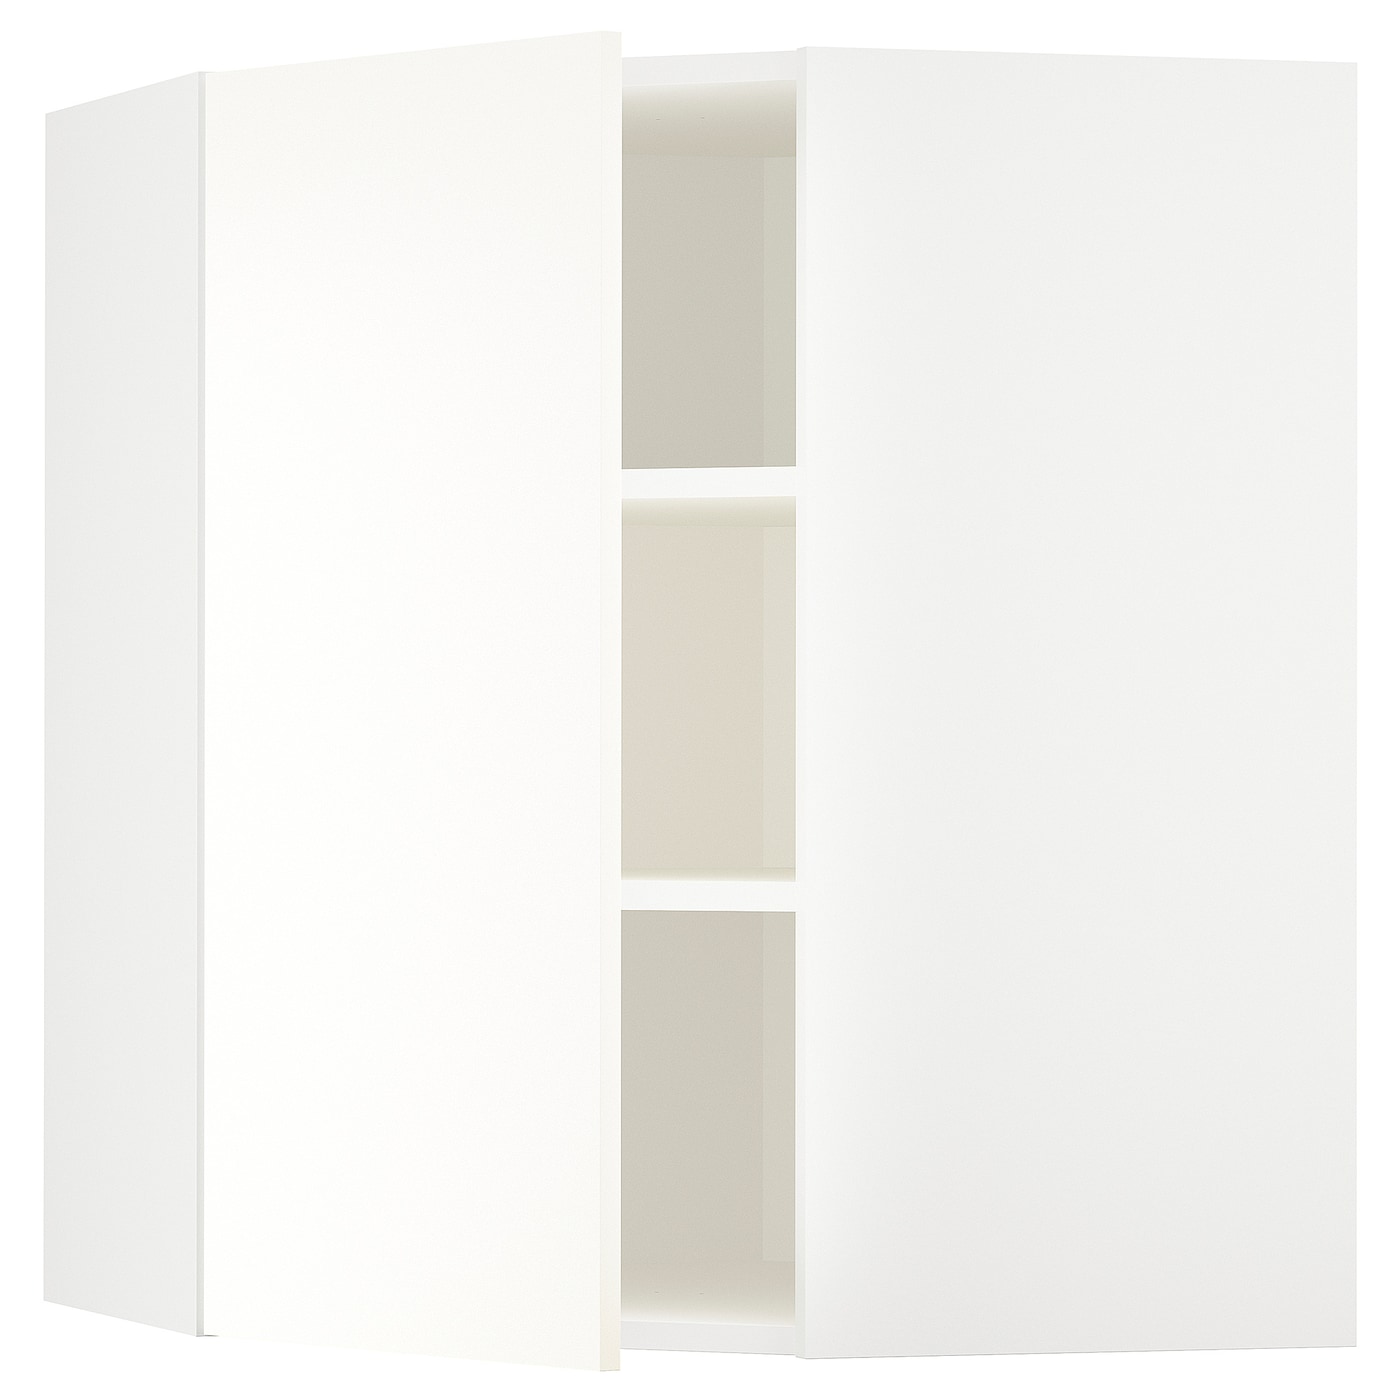 Угловой навесной шкаф с полками - METOD  IKEA/  МЕТОД ИКЕА, 80х68 см, белый/кремовый